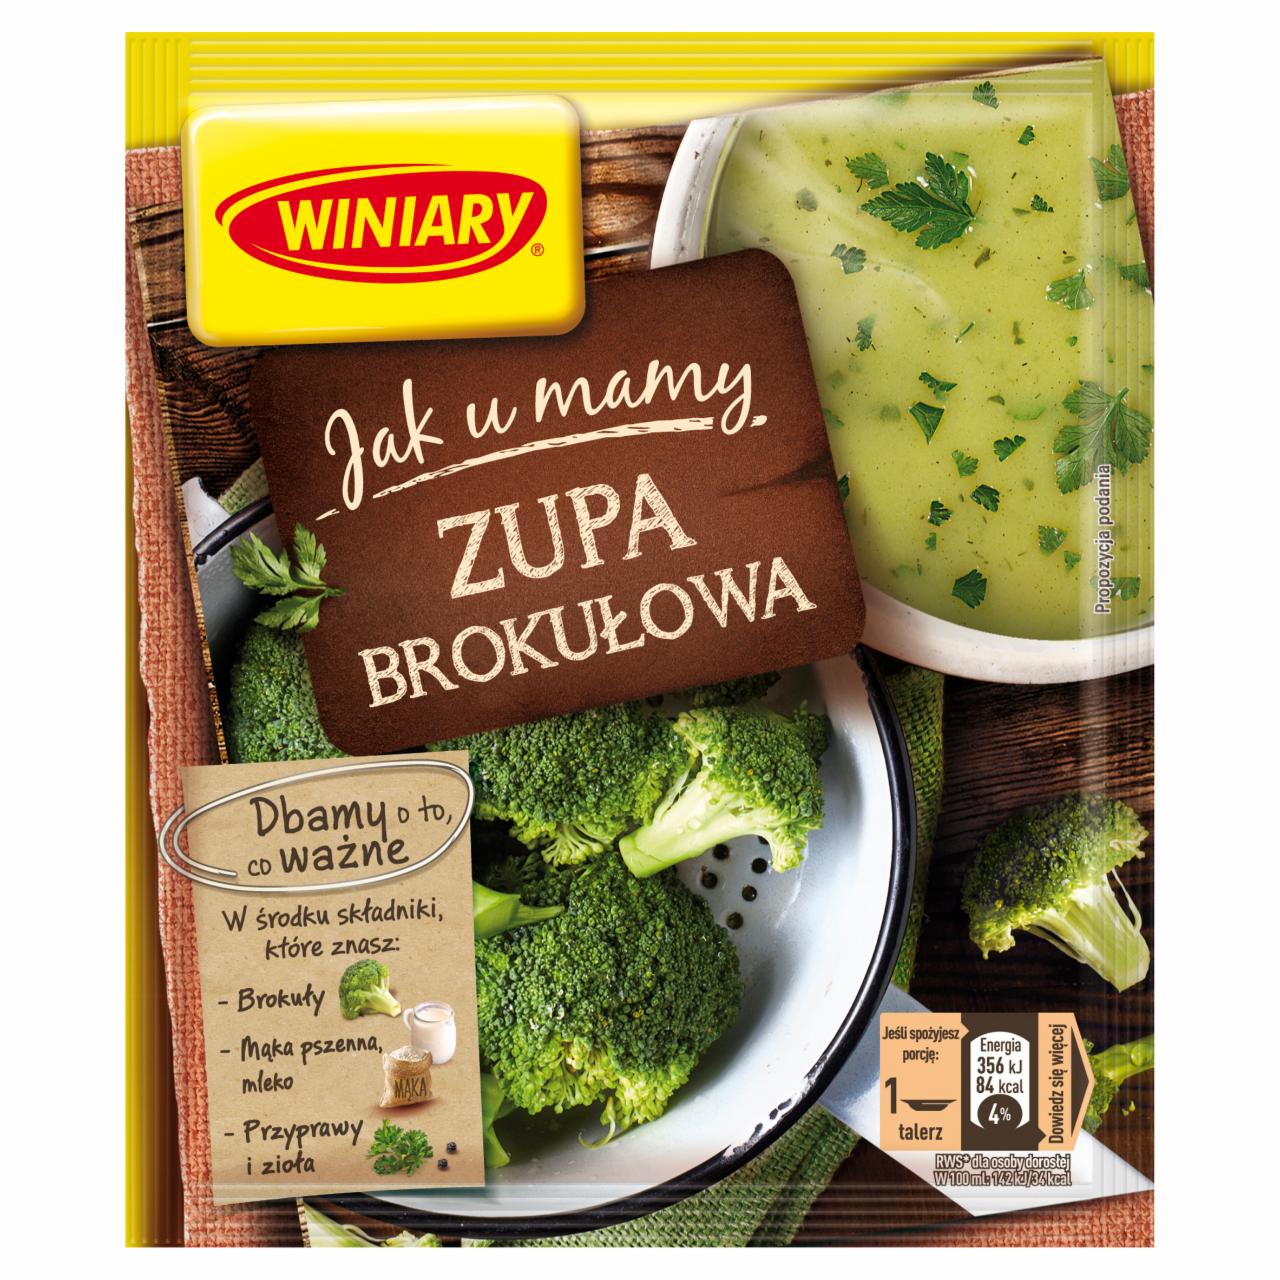 Zdjęcia - Winiary Szlachetne Smaki Zupa brokułowa 49 g